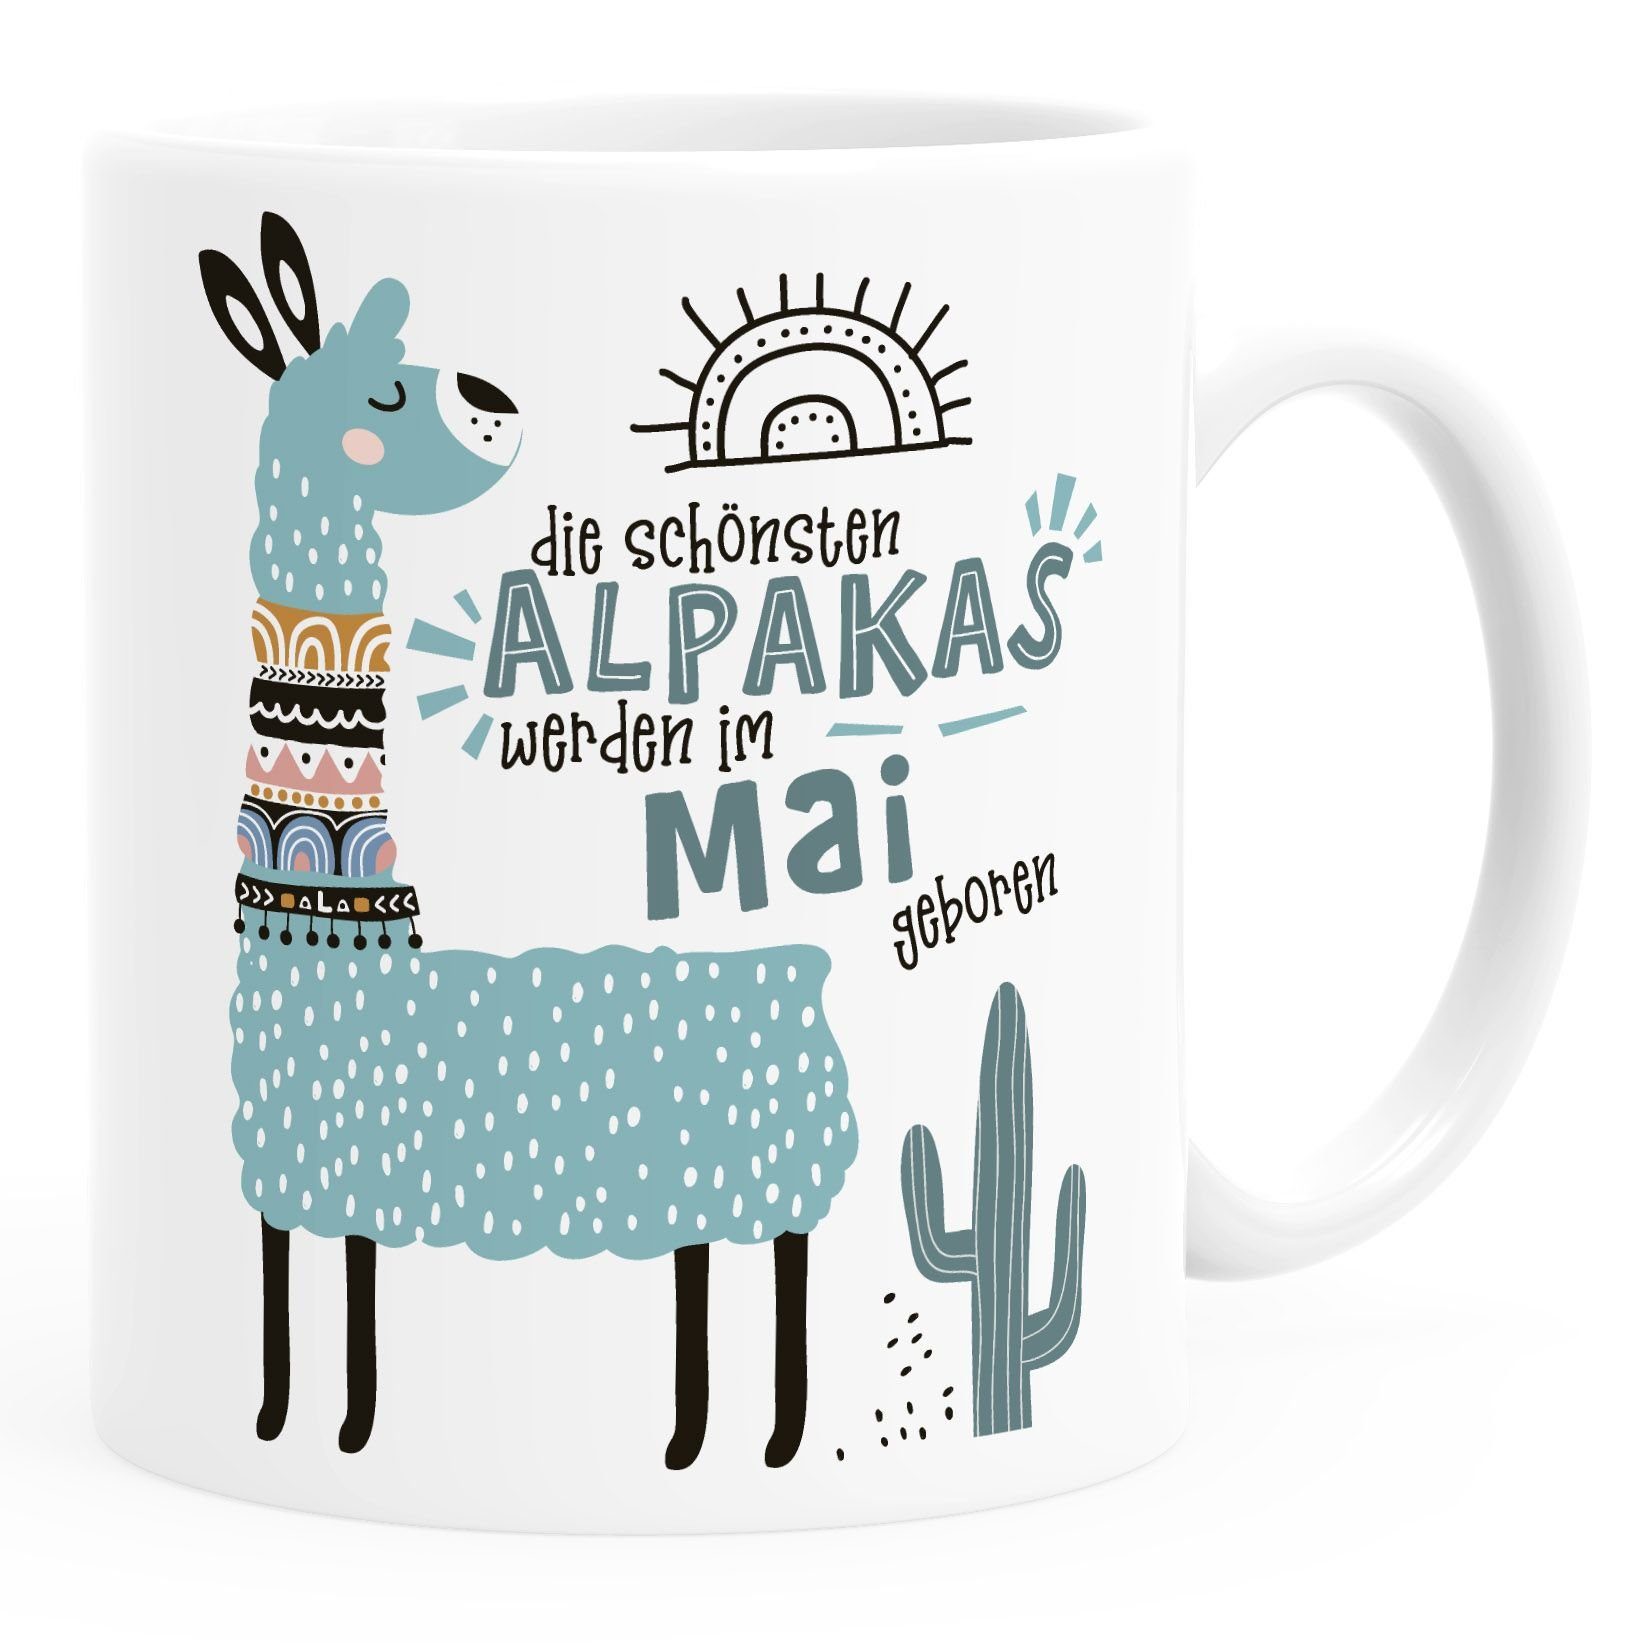 geboren SpecialMe Lama Alpakas Geburtags-Geschenke Die werden Mai Geburtsmonat Januar-Dezember individuelle weiß Kaffee-Tasse Schönsten SpecialMe®, anpassbares Motiv Tasse im Keramik